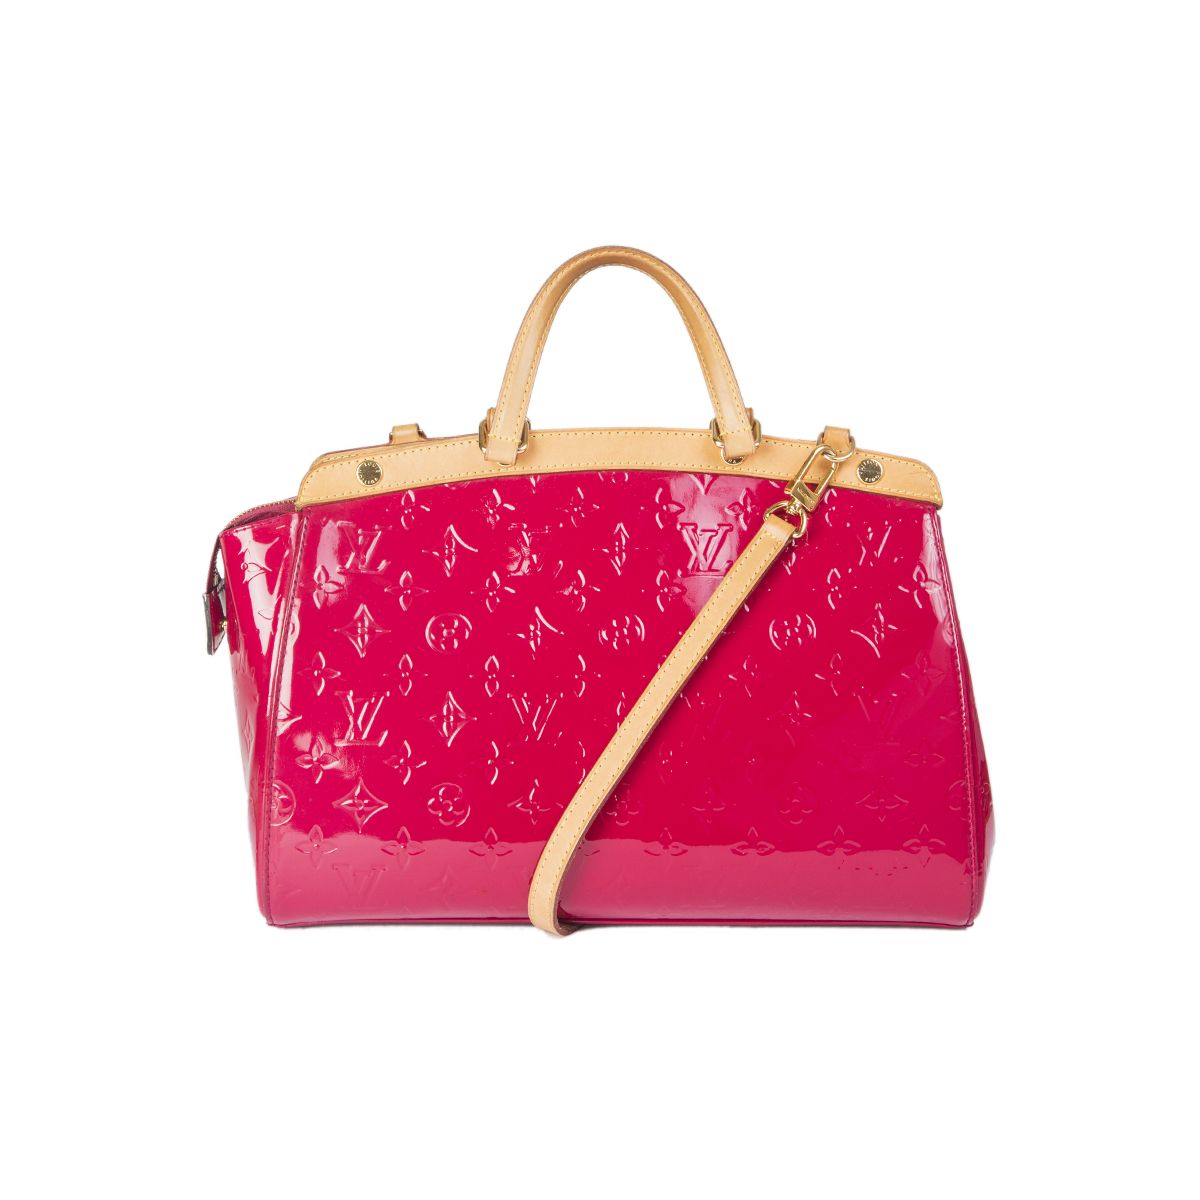 Louis Vuitton 'Brea' MM Tote Bag